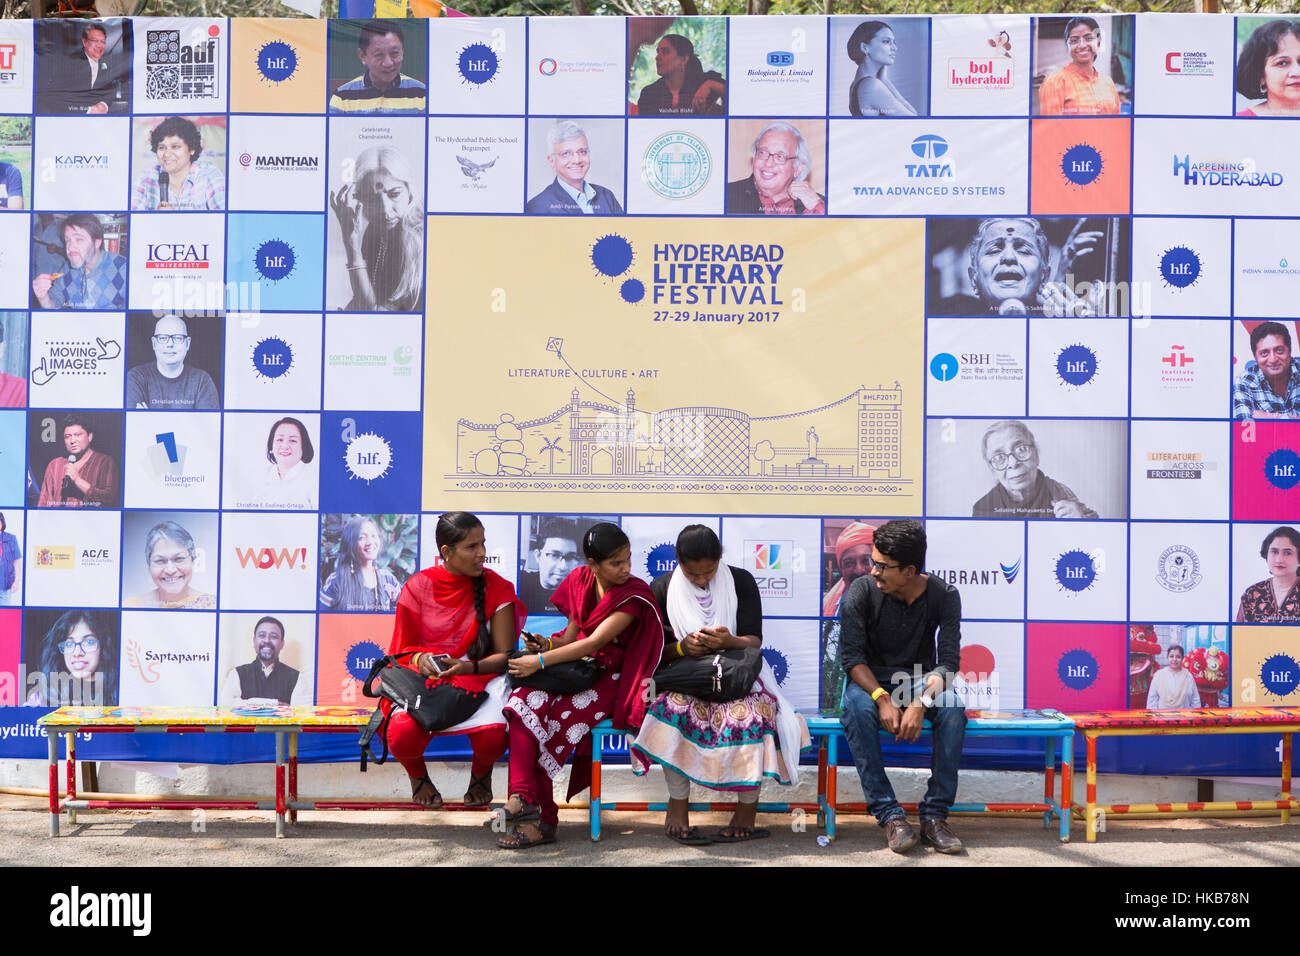 Hyderabad, Inde.27 janvier 2017,. (De G à D) Luna visiteurs faites une pause à Hyderabad Literature Festival le 27 janvier 2017 à Hyderabad, en Inde. Festival de littérature d'Hyderabad est un projet multi-disciplinaire, multi-lingue, événement qui attire plus d'une centaine d'écrivains, artistes, universitaires, chercheurs, éditeurs de l'Inde et à l'étranger chaque année.Sanjay Borra/Alamy Live News Banque D'Images